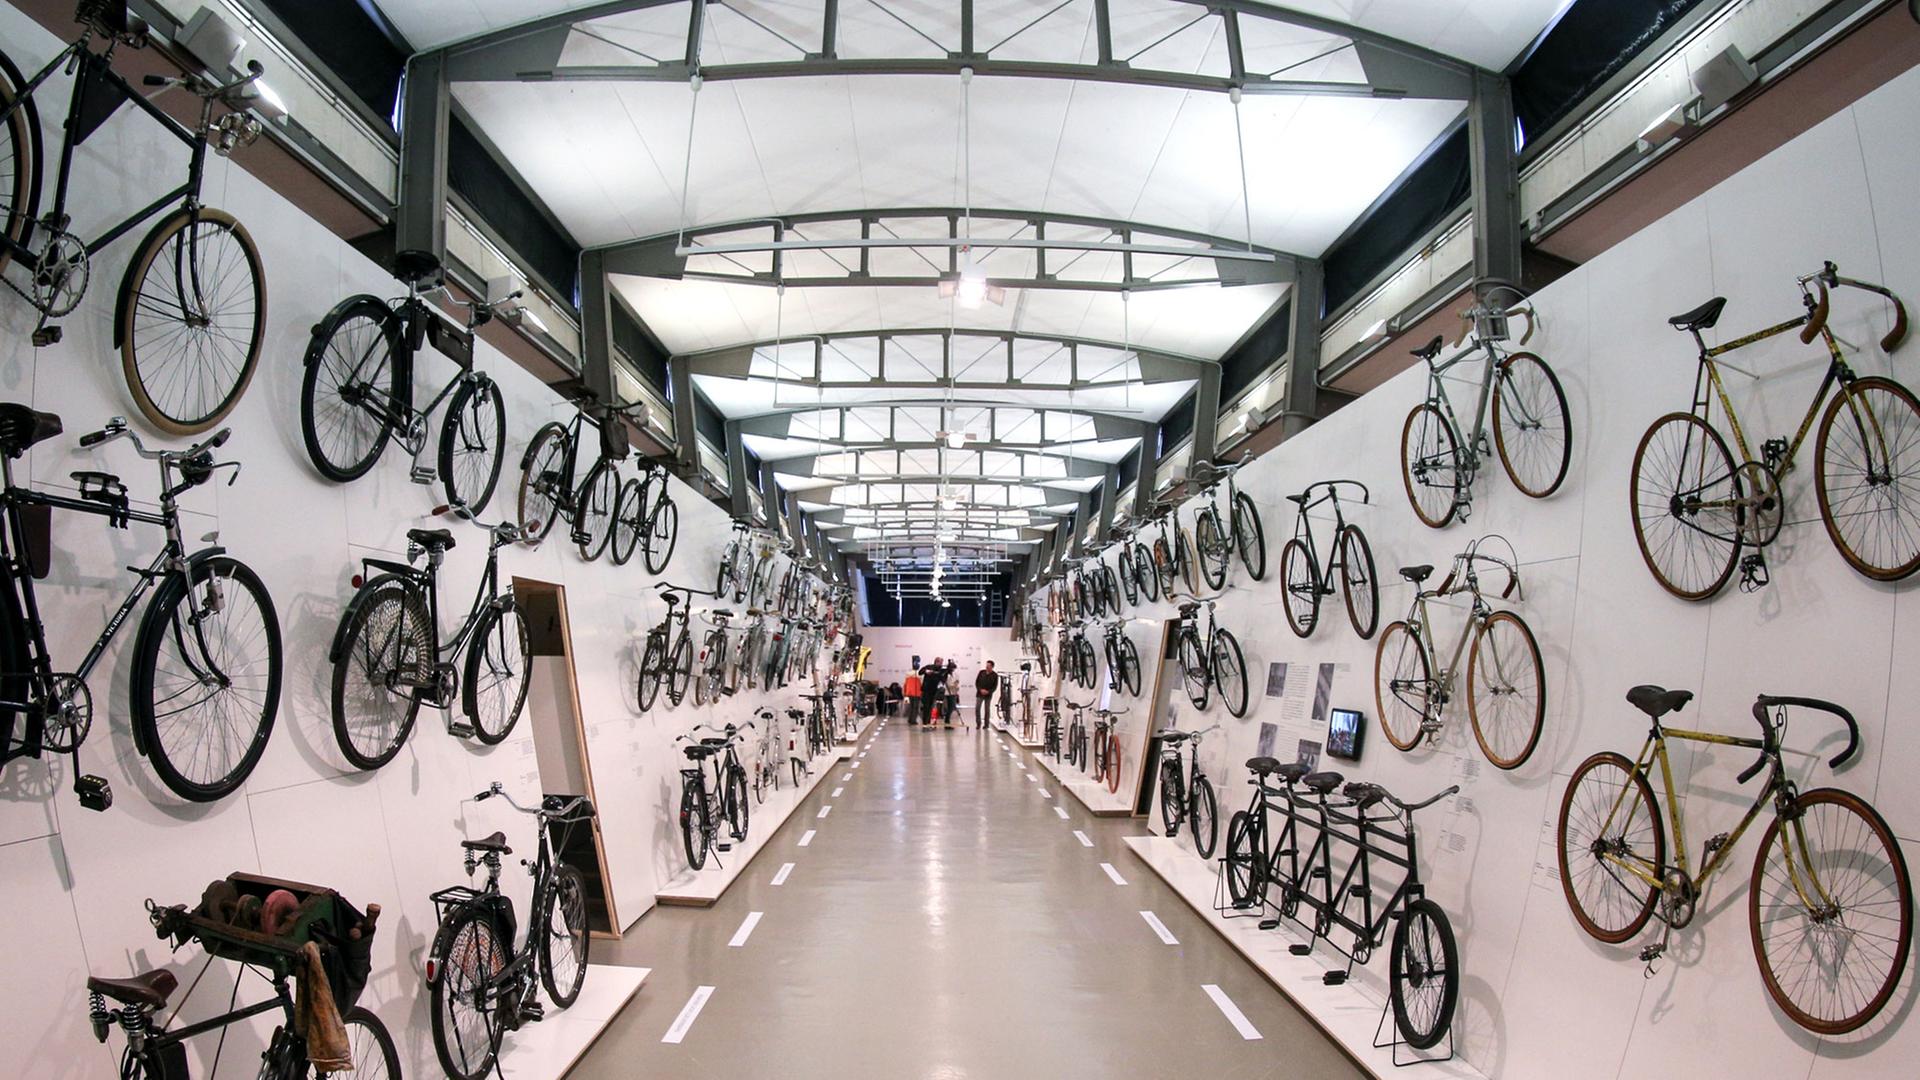 Fahrräder aus diversen historischen Epochen hängen in Hamburg im Museum für Arbeit an den Ausstellungswänden. Das Museum zeigt die Ausstellung "Das Fahrrad - Kultur, Technik, Mobilität".